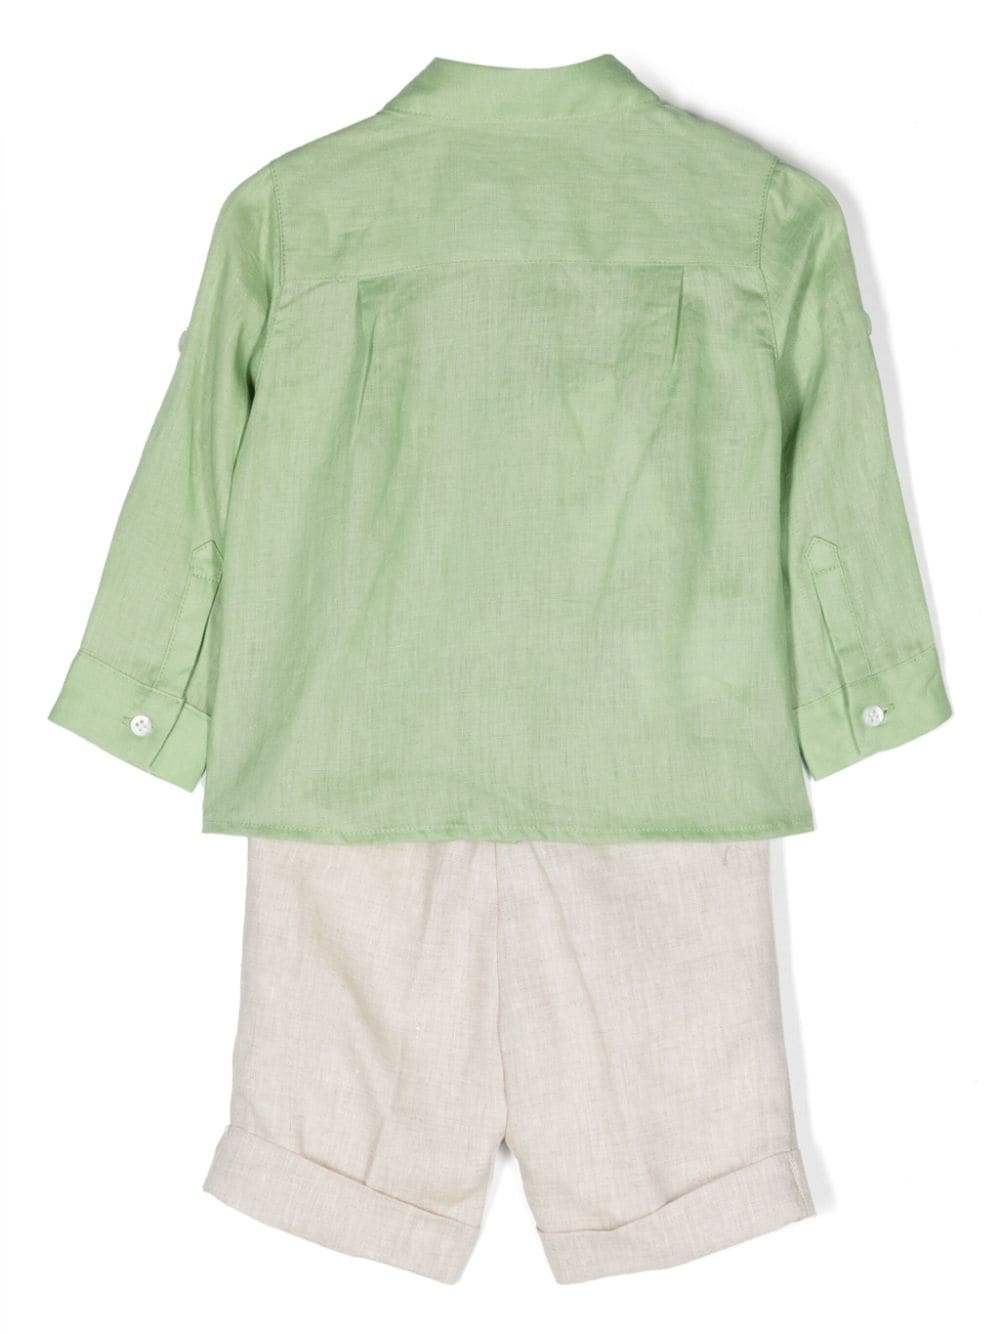 Completo elegante verde e beige per neonato